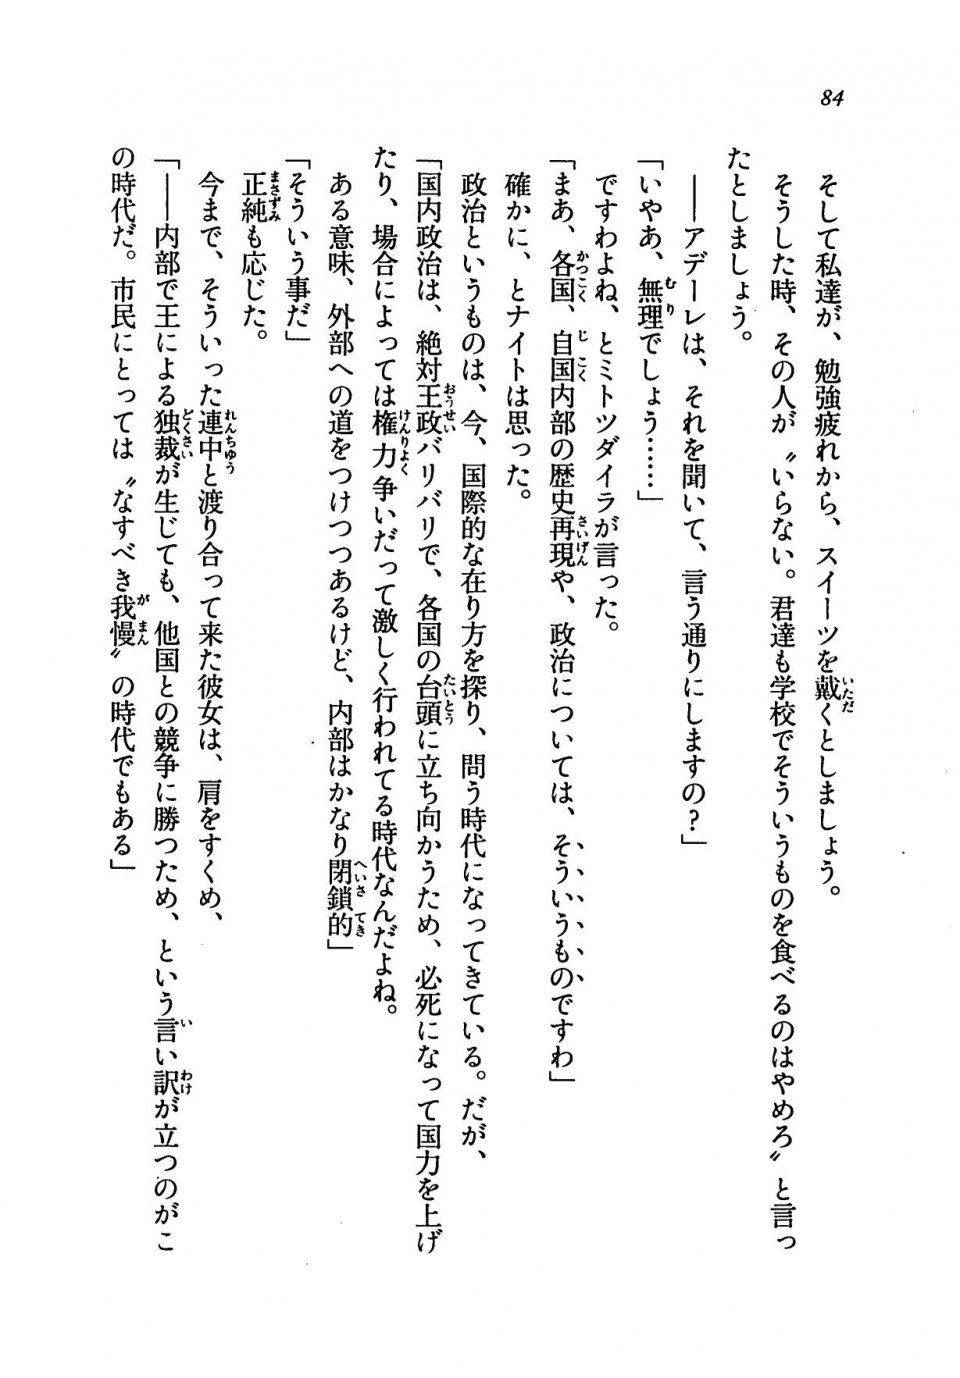 Kyoukai Senjou no Horizon LN Vol 19(8A) - Photo #84